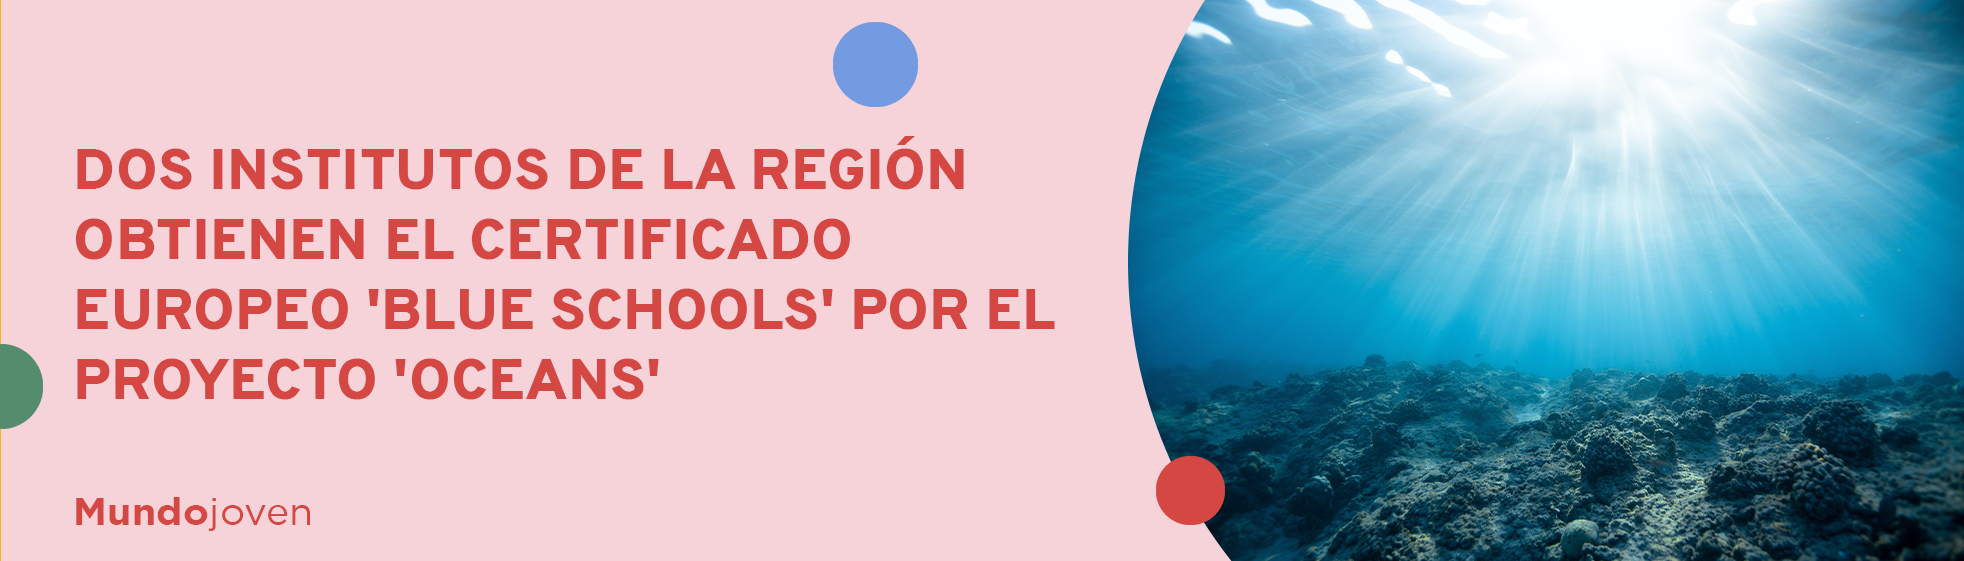 Dos institutos de la Región obtienen el certificado europeo 'Blue Schools' por el proyecto 'Oceans'